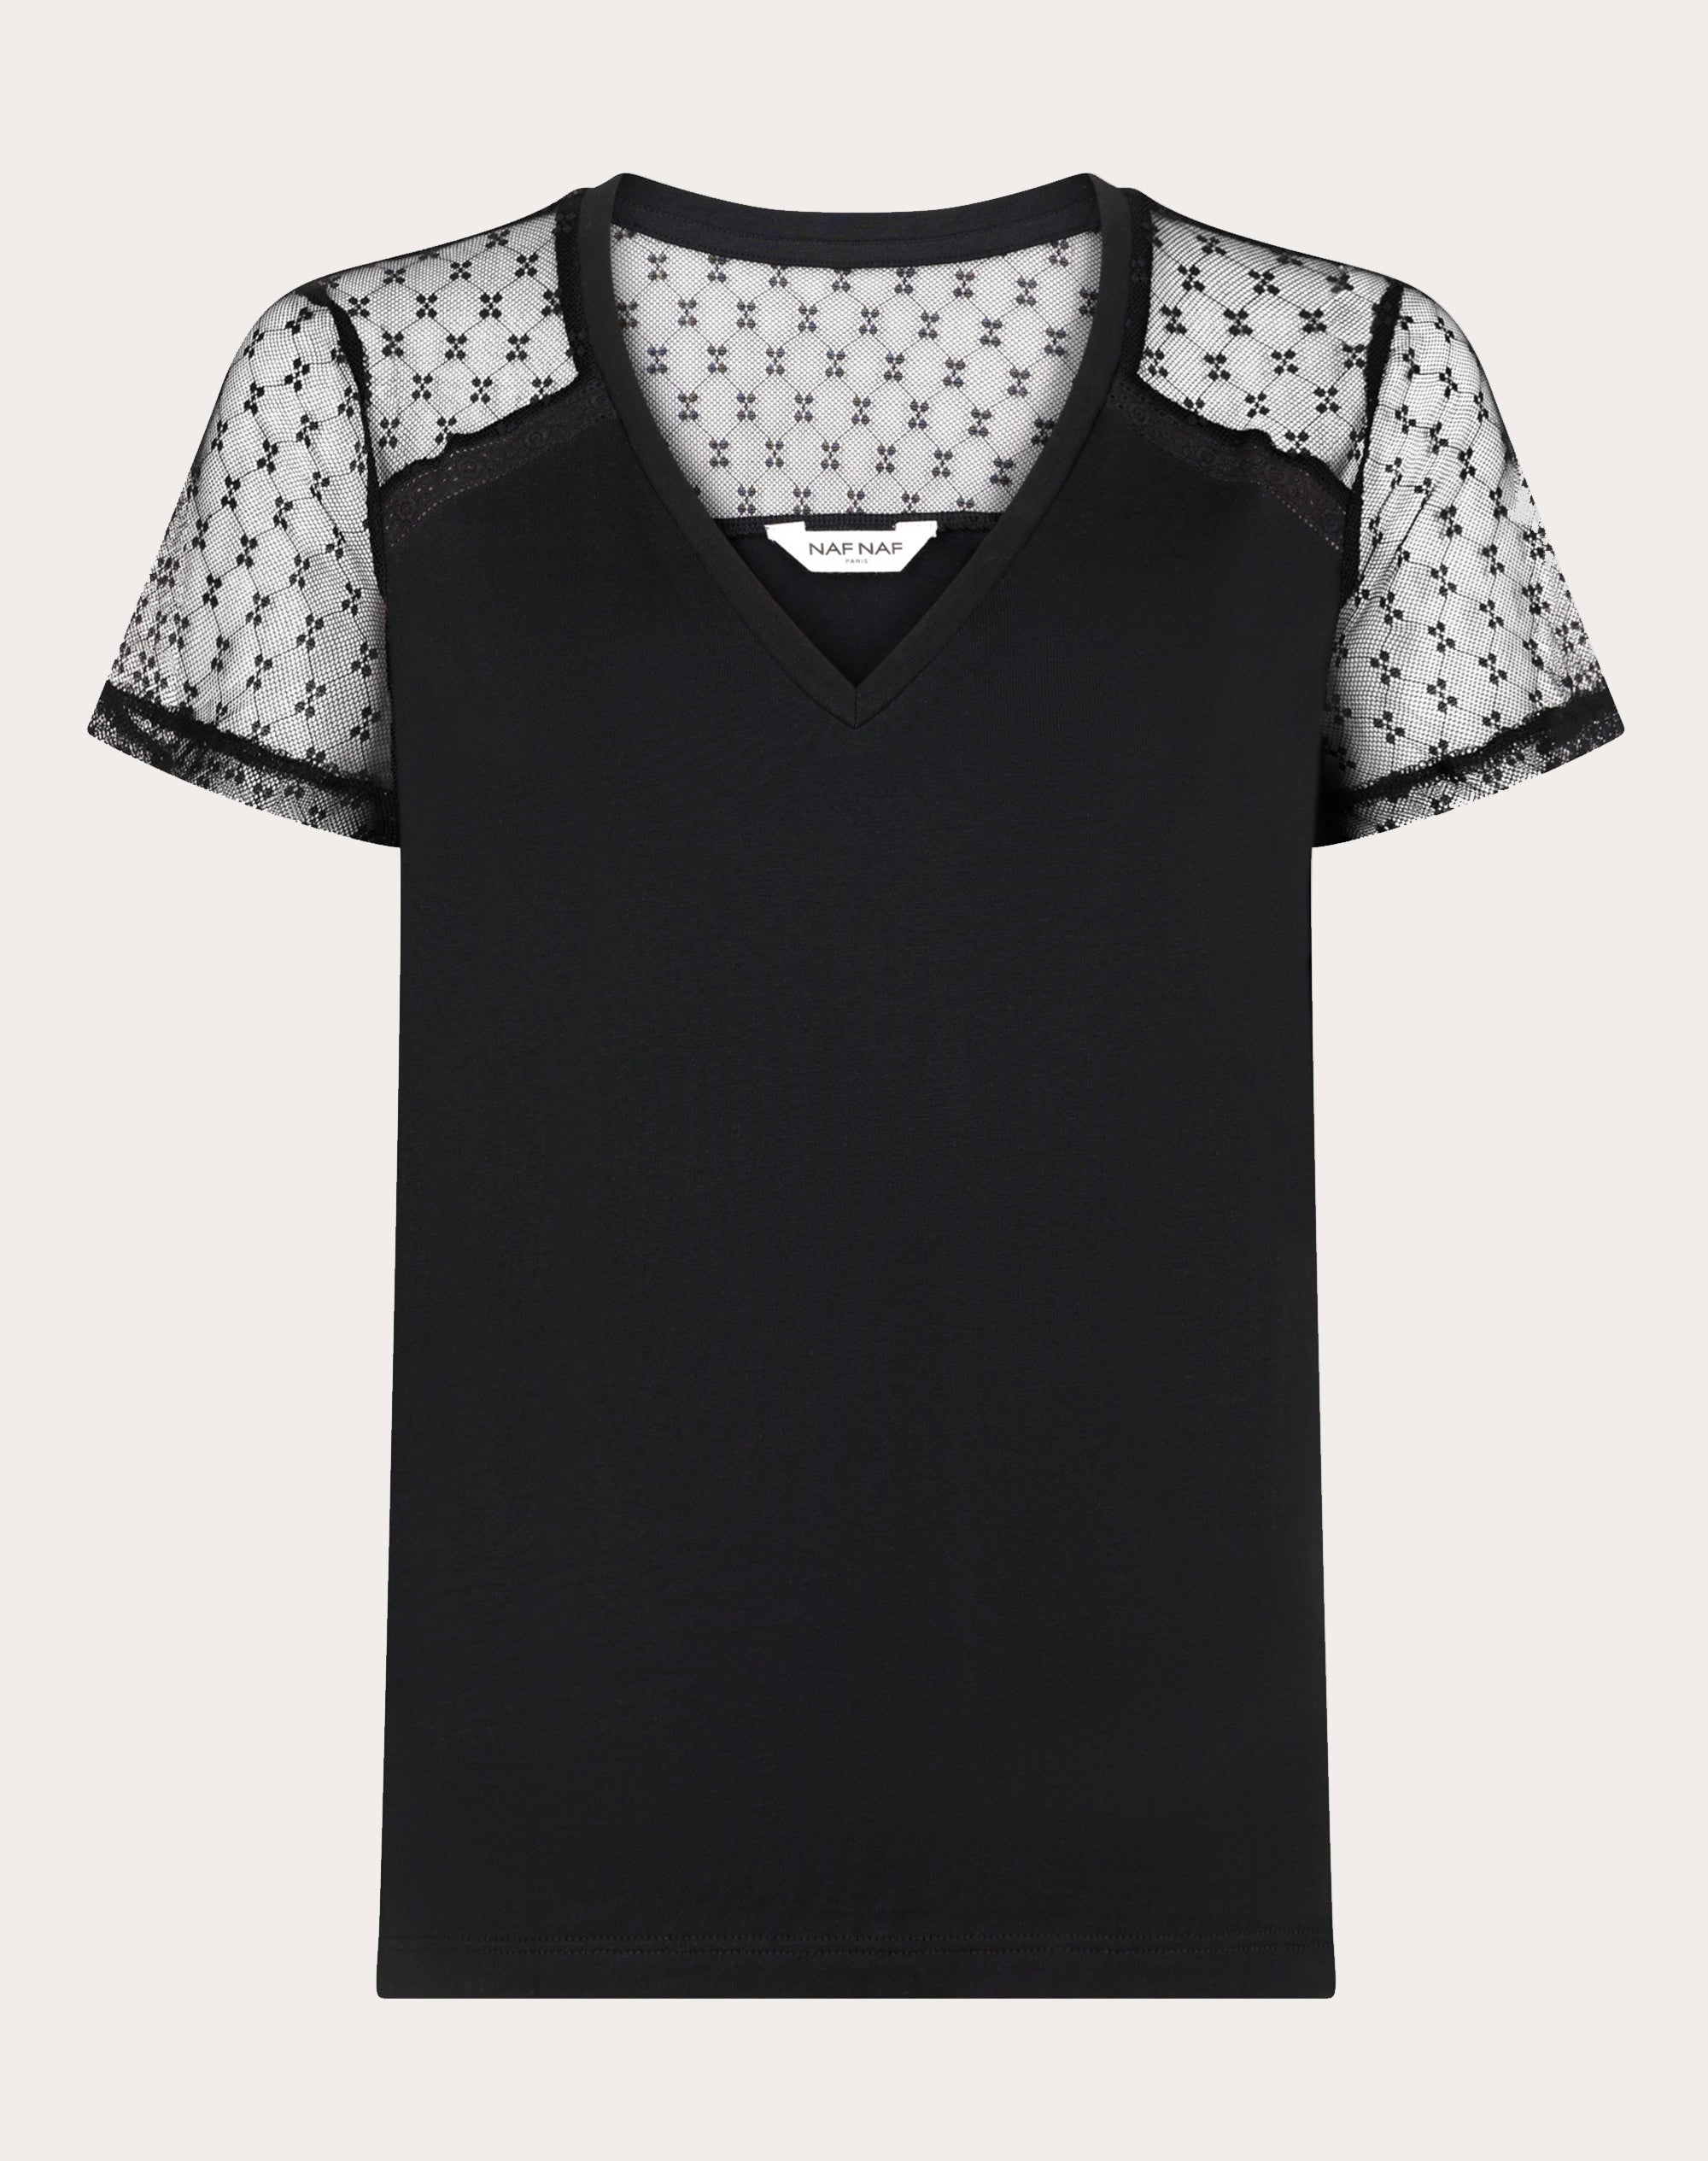 Camiseta rejilla de puntos Color Negro, Camisetas Mujer